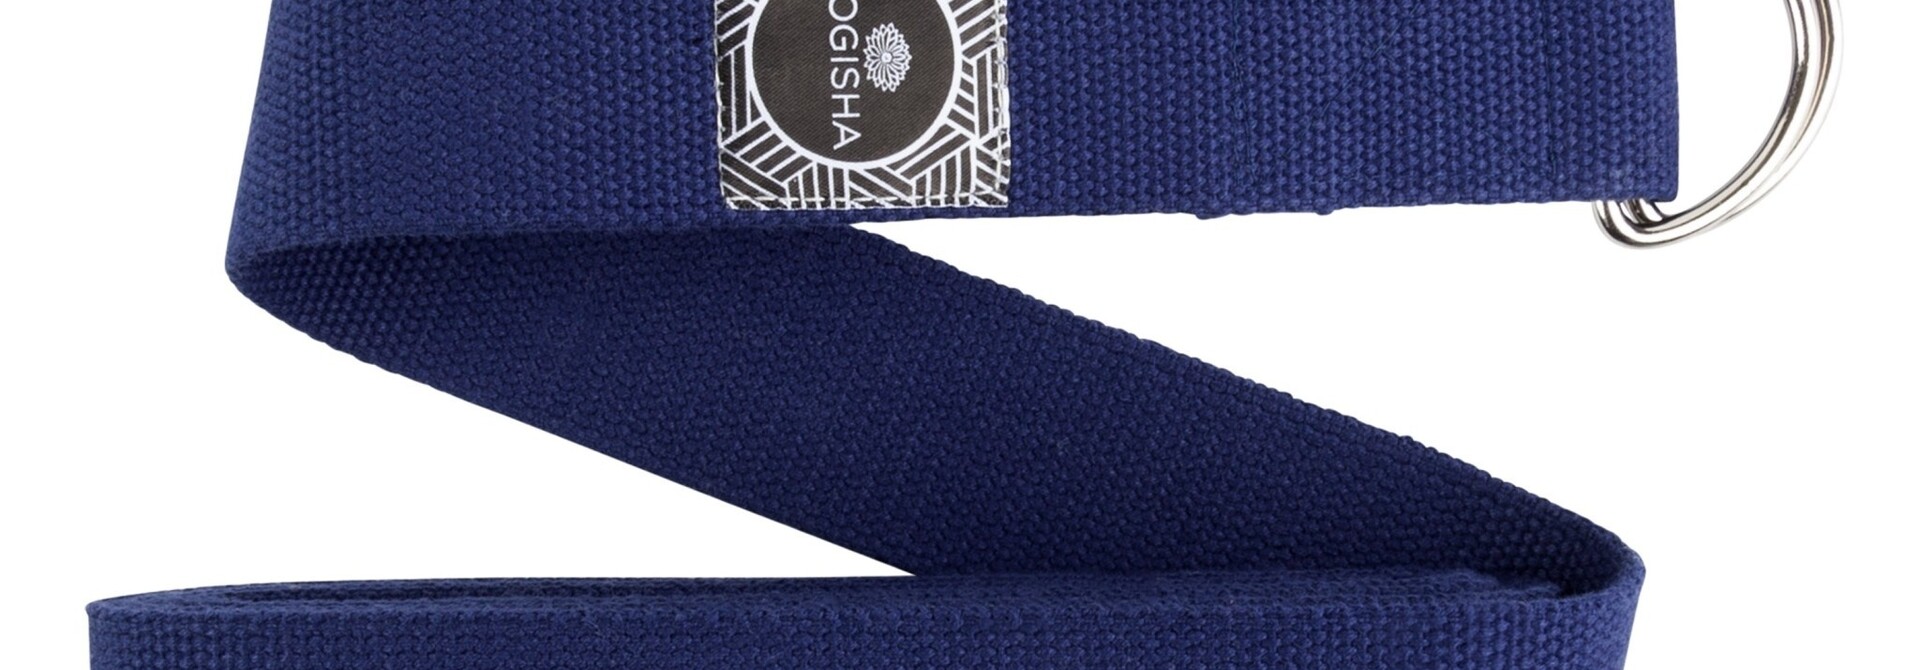 Yogisha Yoga Belt Cotton